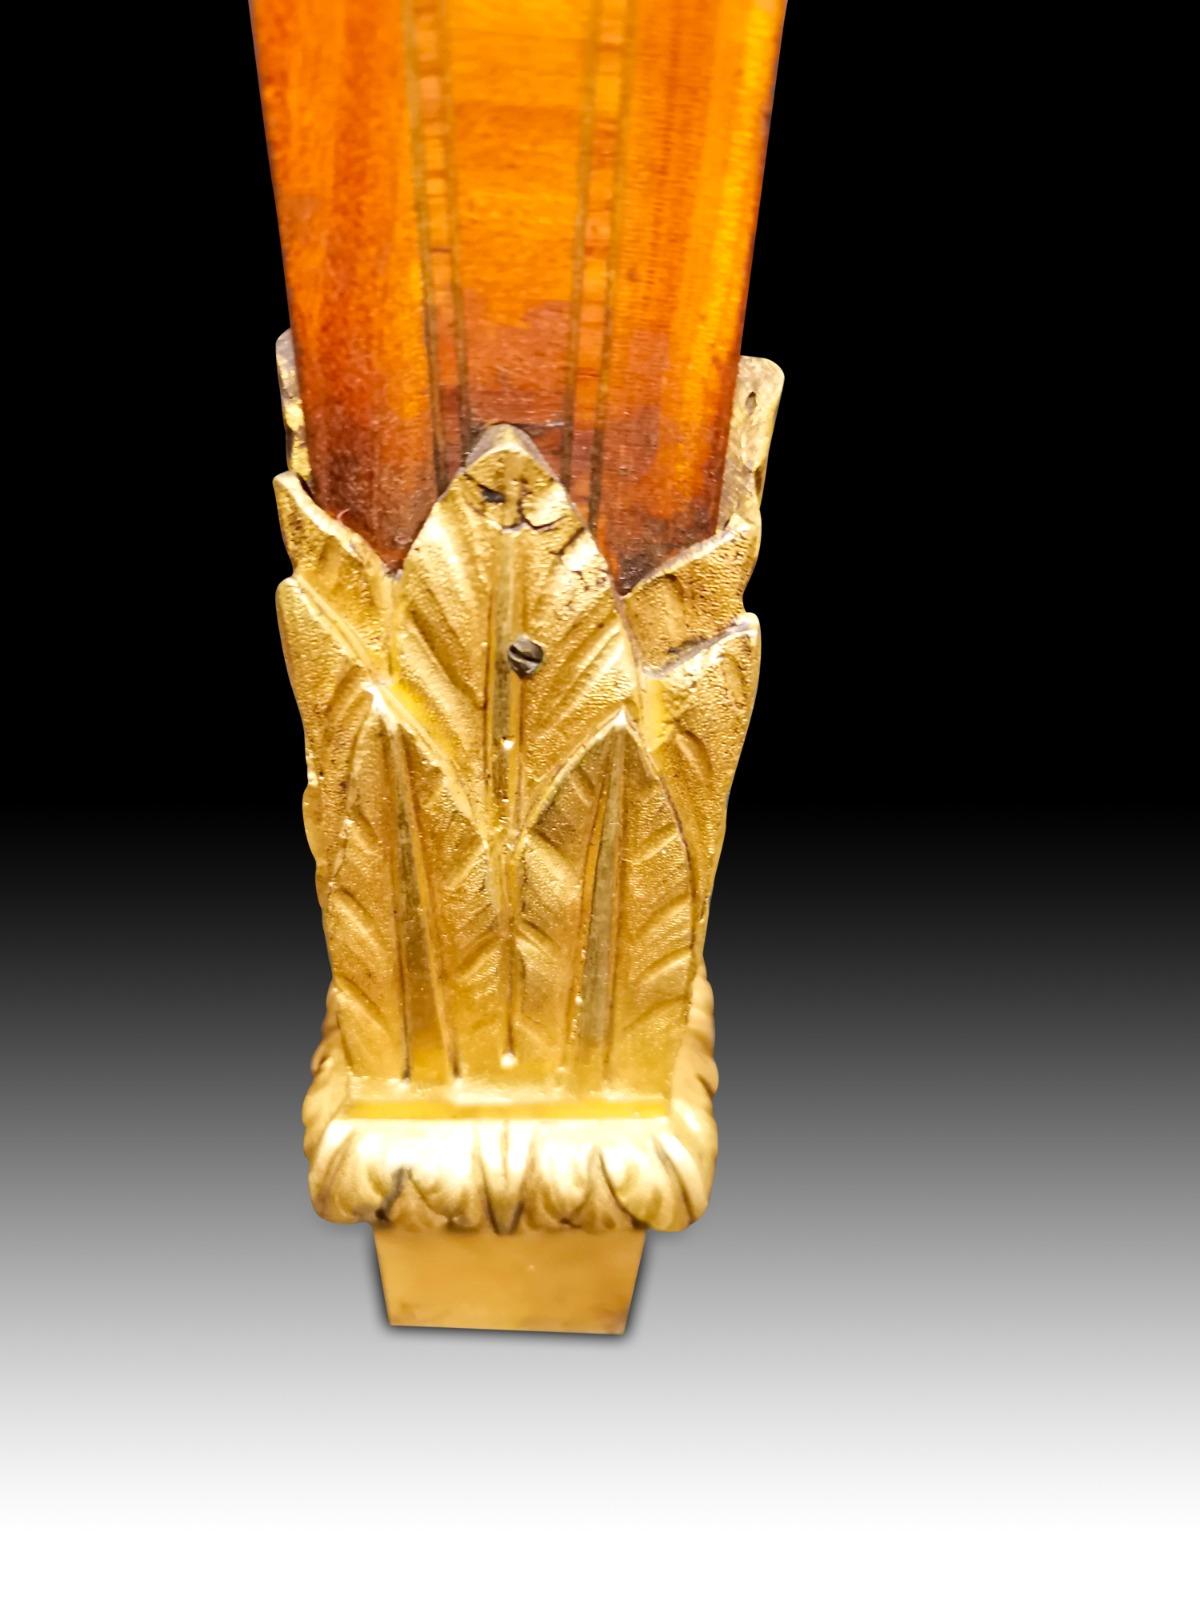 Alte italienische Überraschungsbar aus dem neunzehnten Jahrhundert, aus hellem Obstholz - sie hat ein Hebesystem für das Tablett, das im Inneren aufbewahrt wird und beweglich ist. Sie ist mit vergoldeten Bronzebeschlägen verziert und sehr fein